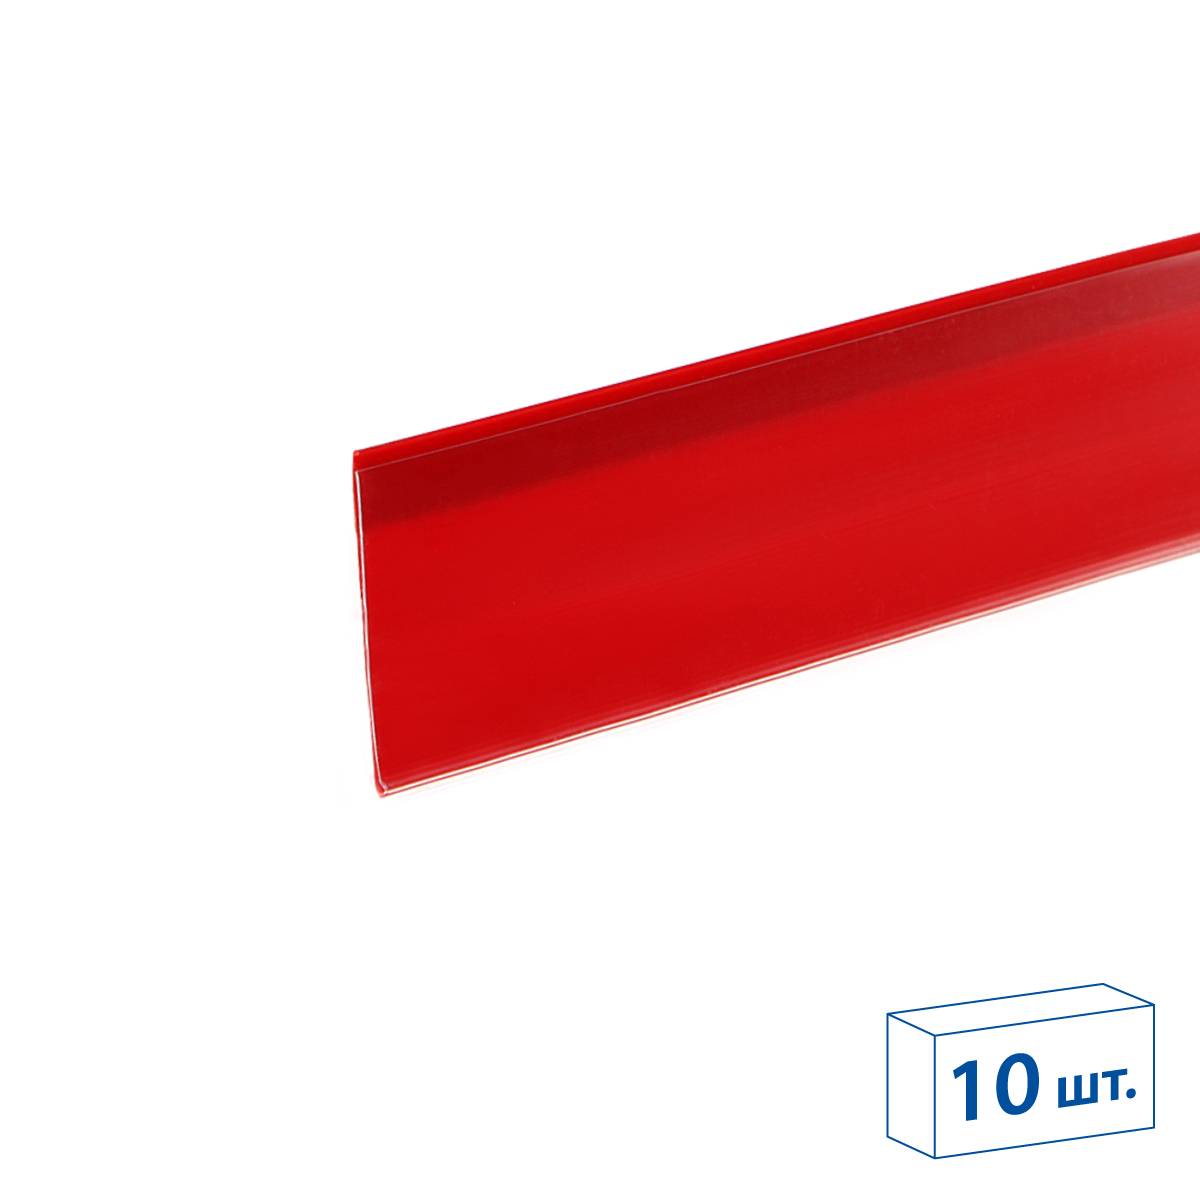 Ценникодержатель DBR39 красный, 1250 мм (10 шт. в упаковке)